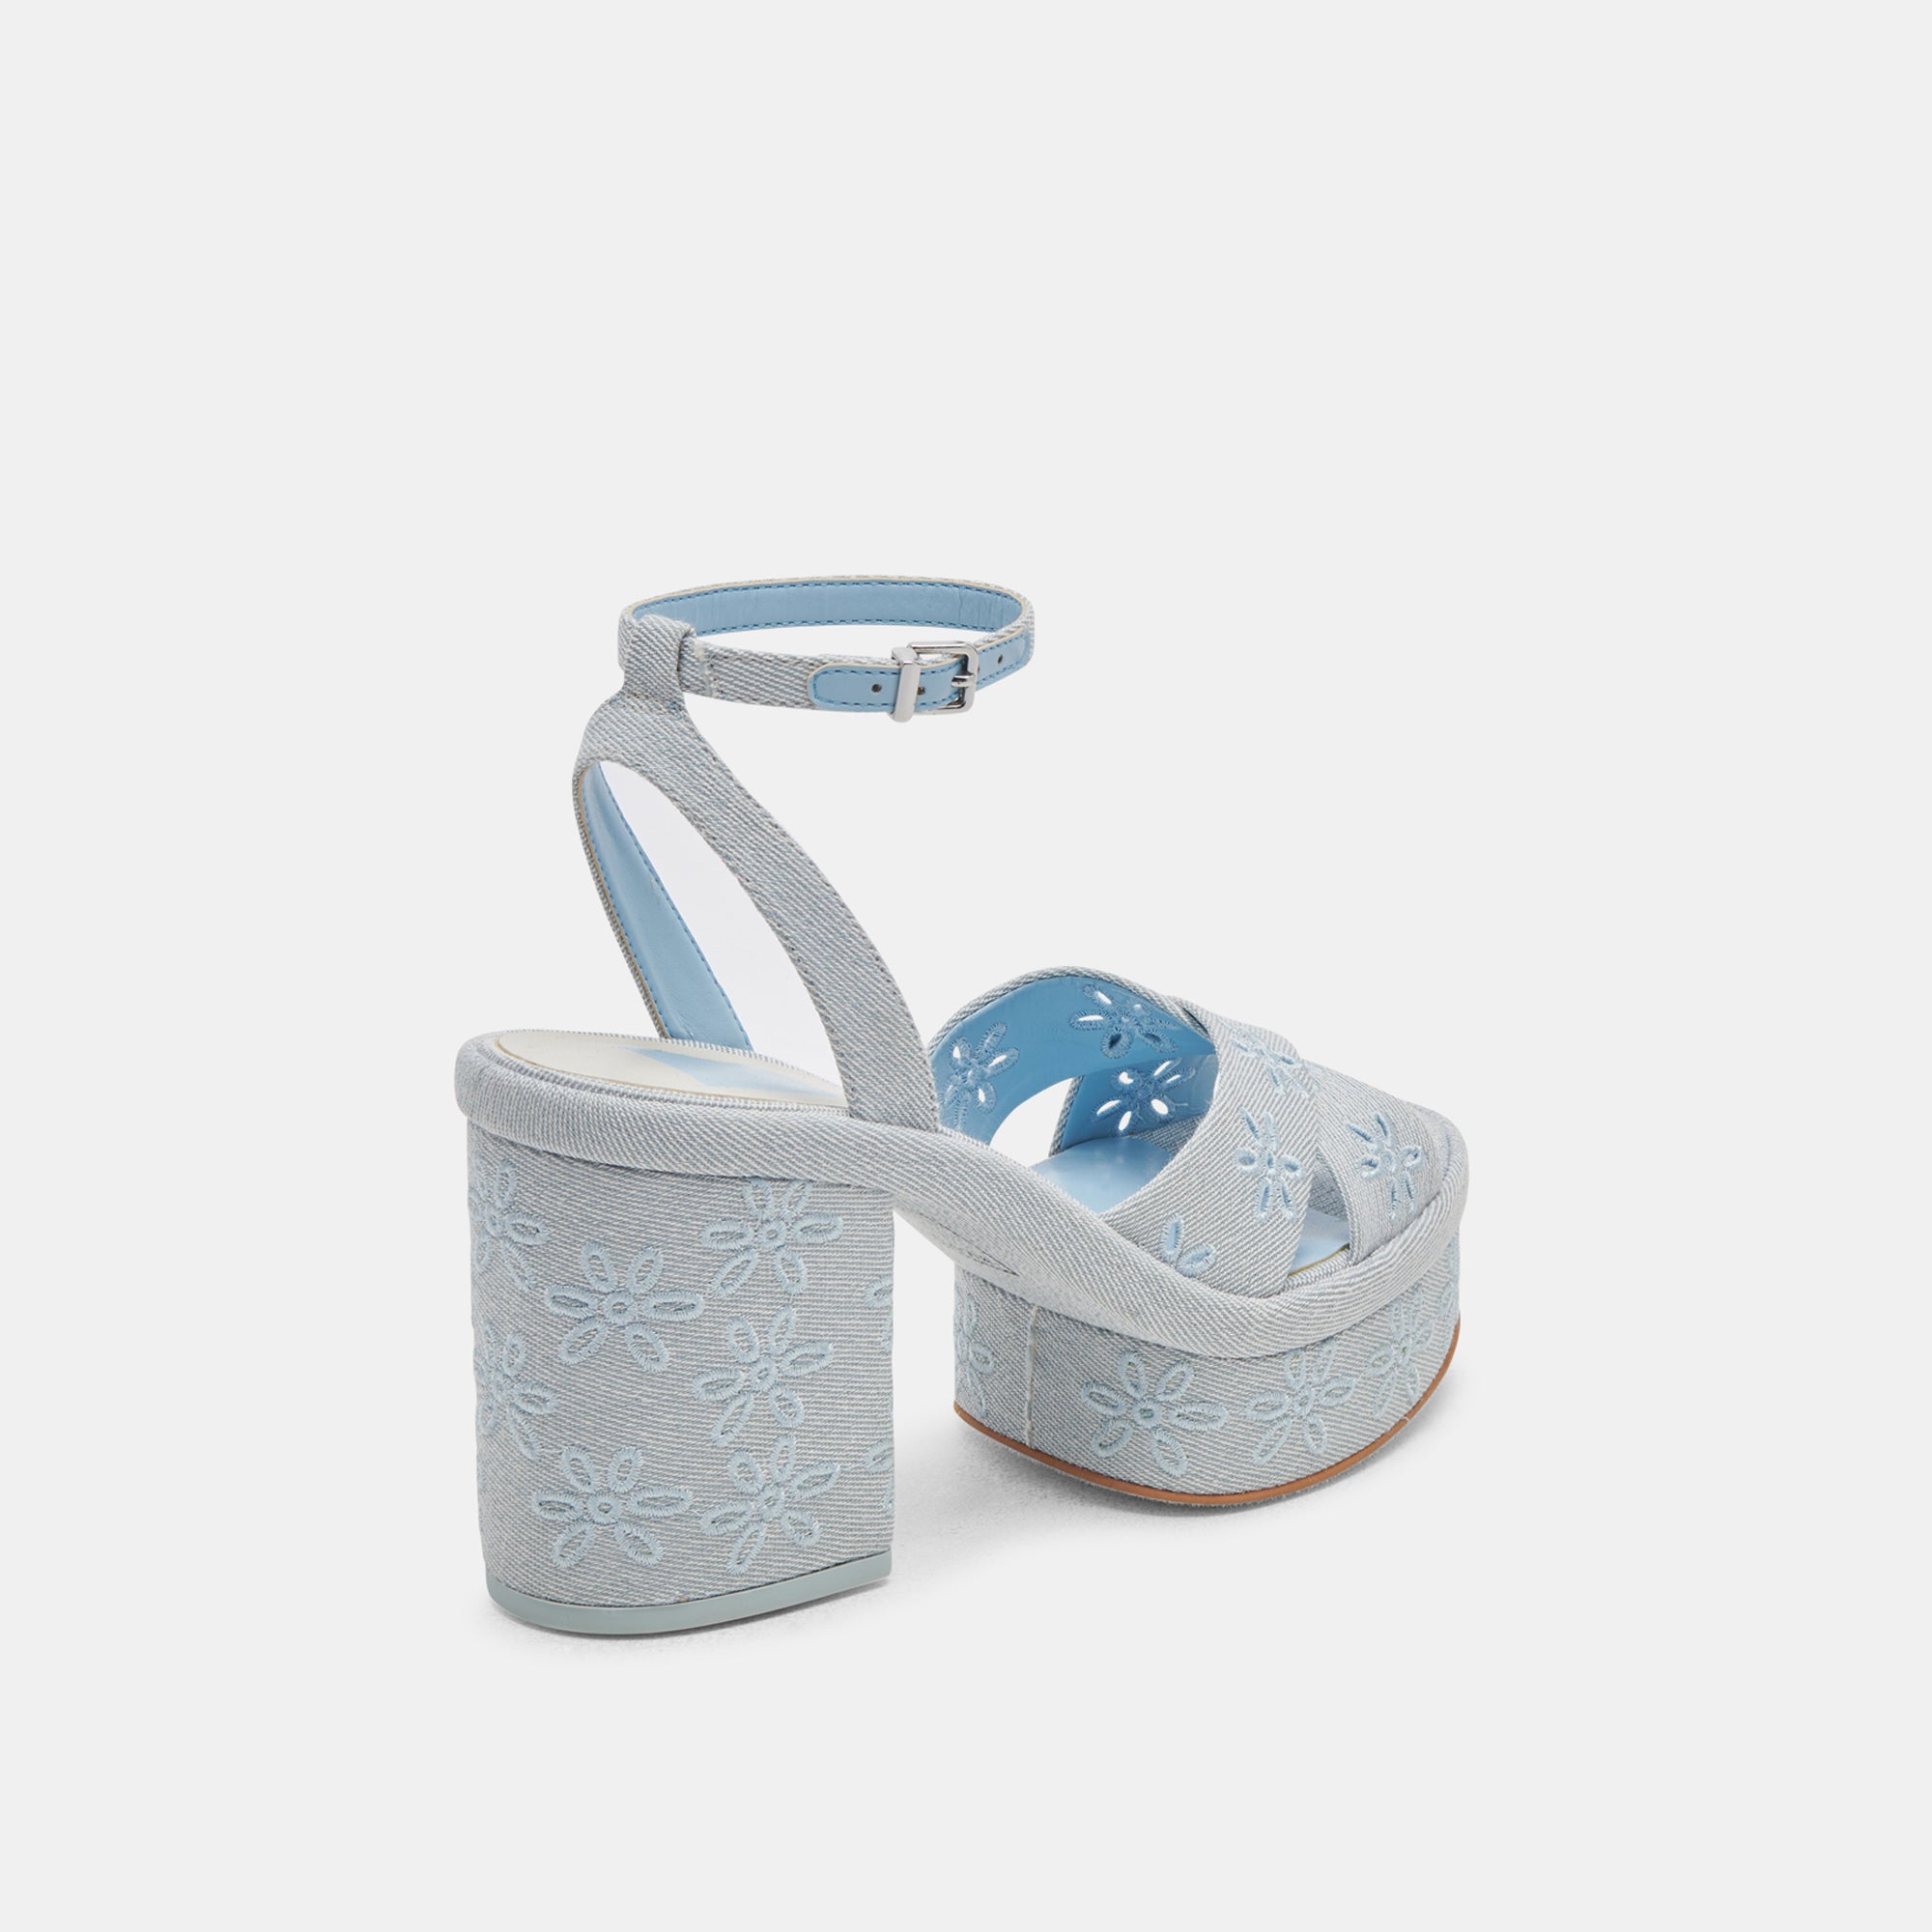 Sugar Thrillz baby blue platform heels size 9 men's - Depop